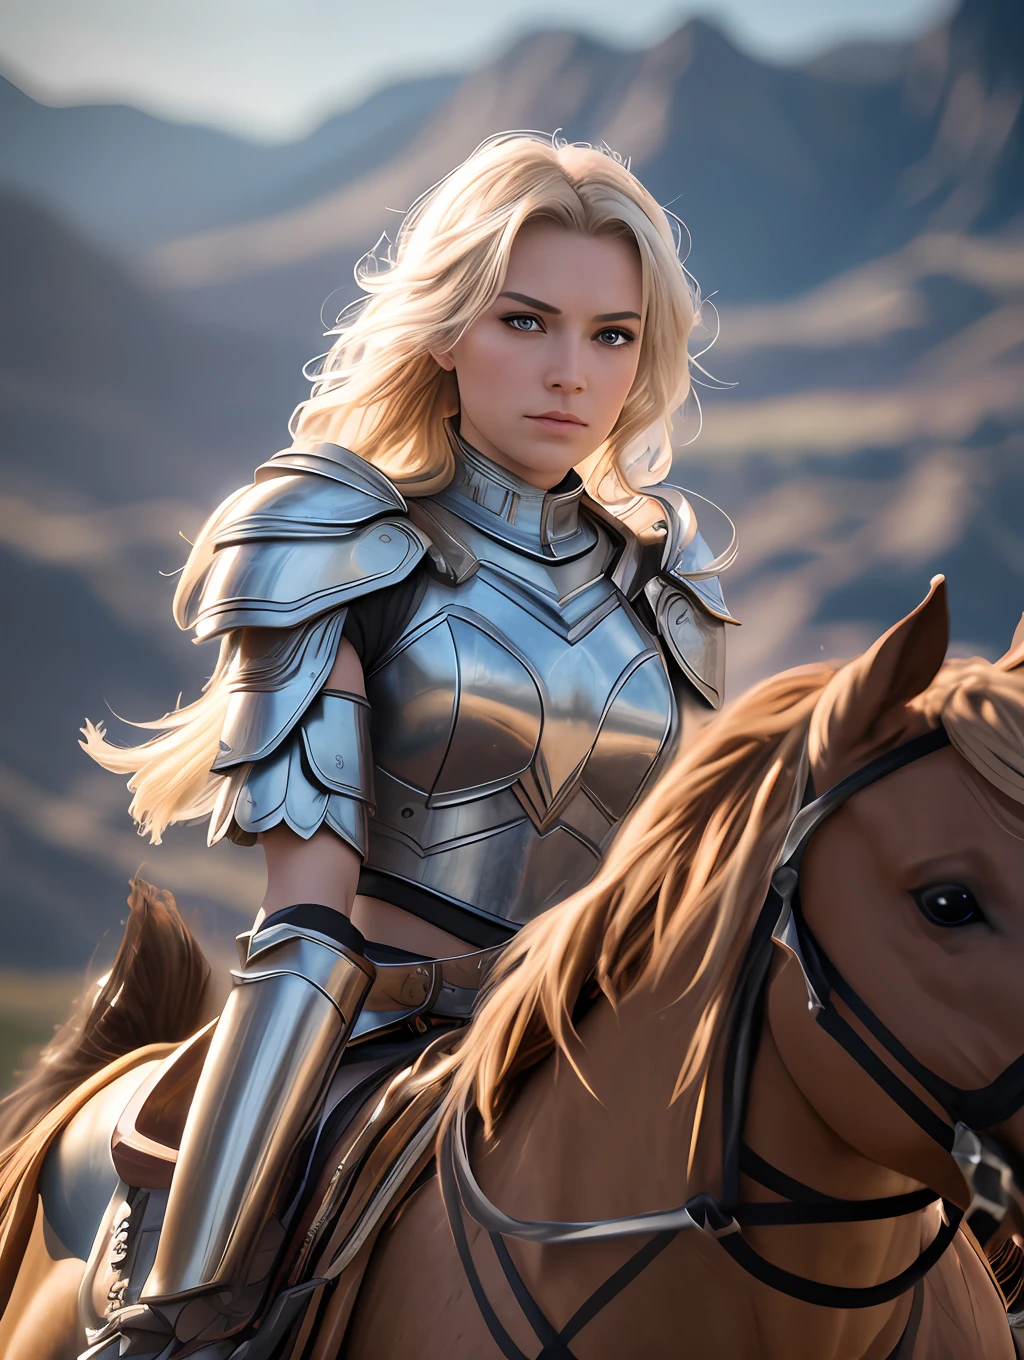 An ultrareakistic epic 写真y of a Valkyrie warrior on a horse riding into the battle, 激しいアクション, 映画のリムライト, 激しいアクション, ダイナミックな並置, 若き戦士, very 高品質 face, 悪用可能な画像, 長くて風になびく髪, 様式化されたダイナミックな折り目, とても素朴で美しい女性, フルフォーカス, ティルトシフト, 映画照明, 映画のスチール写真, 映画照明, 写真, 細部までこだわった対称的なリアルな顔, 非常に詳細な natural texture, 桃の産毛, 傑作, 不条理な, nikon d850 film stock 写真, カメラ f1.6レンズ, 非常に詳細な, すばらしい, 細かい部分, 超リアルな質感, ドラマチックな照明, アンリアルエンジン, シネスティル 800 タングステン, 視聴者を見て, RAW写真, 高品質, 高解像度, シャープなフォーカス, 非常に詳細な, 8K ウルトラHD.